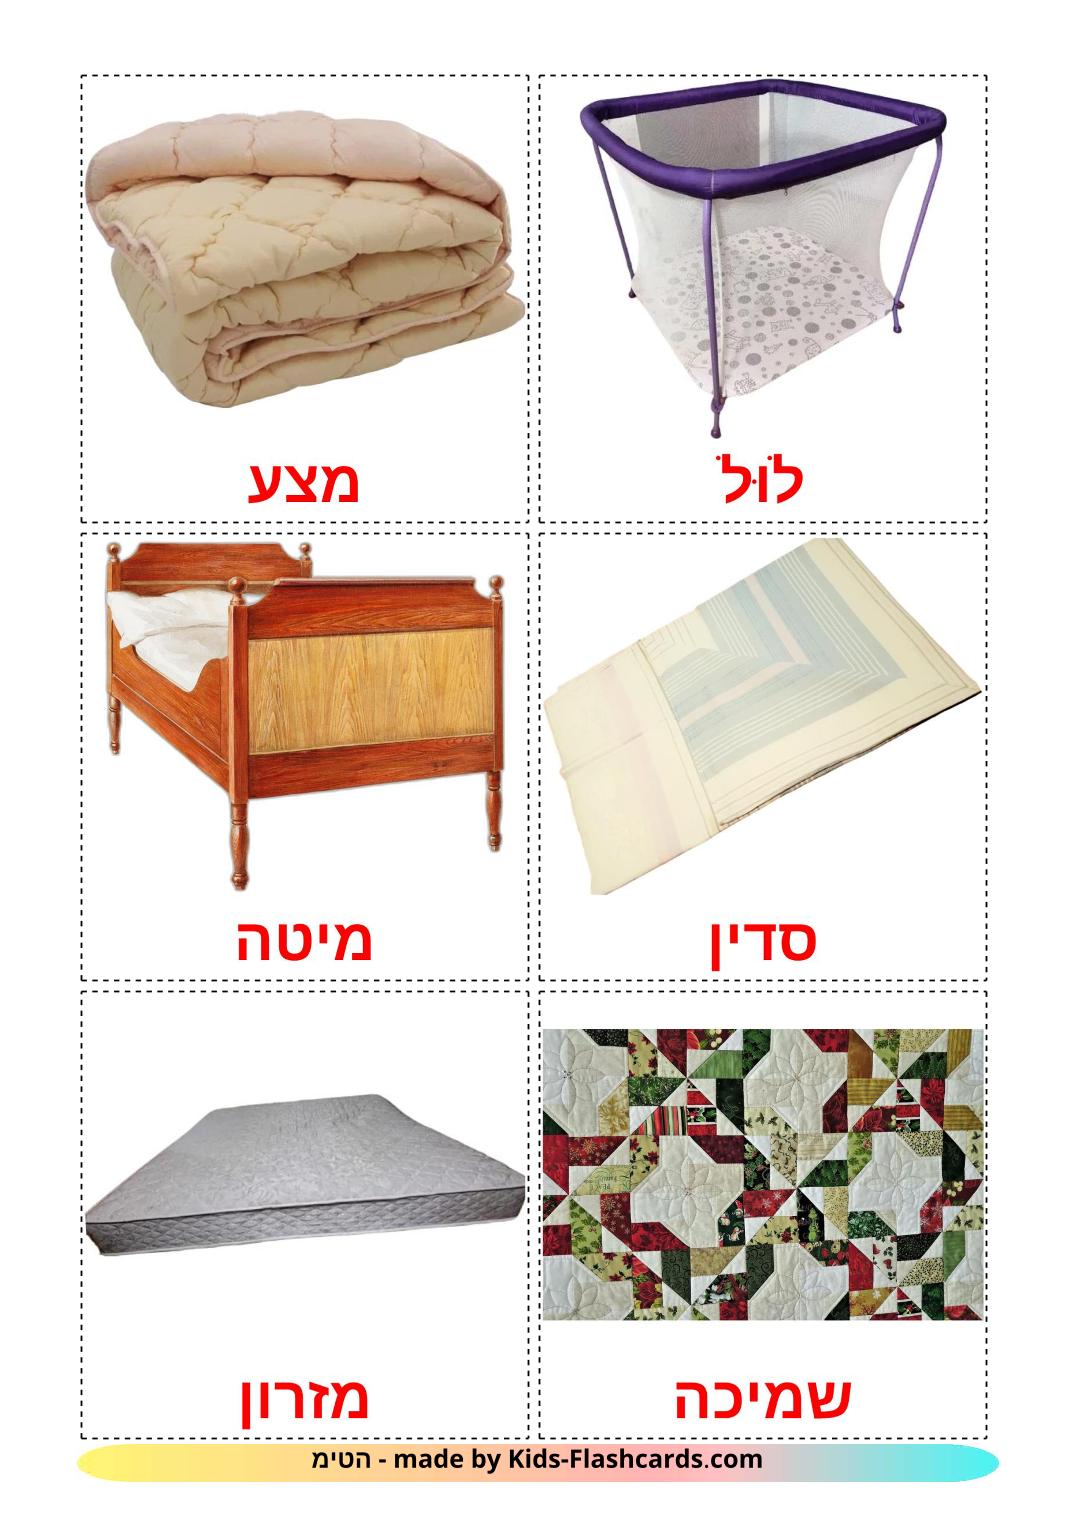 Cama - 14 Flashcards hebraicoes gratuitos para impressão